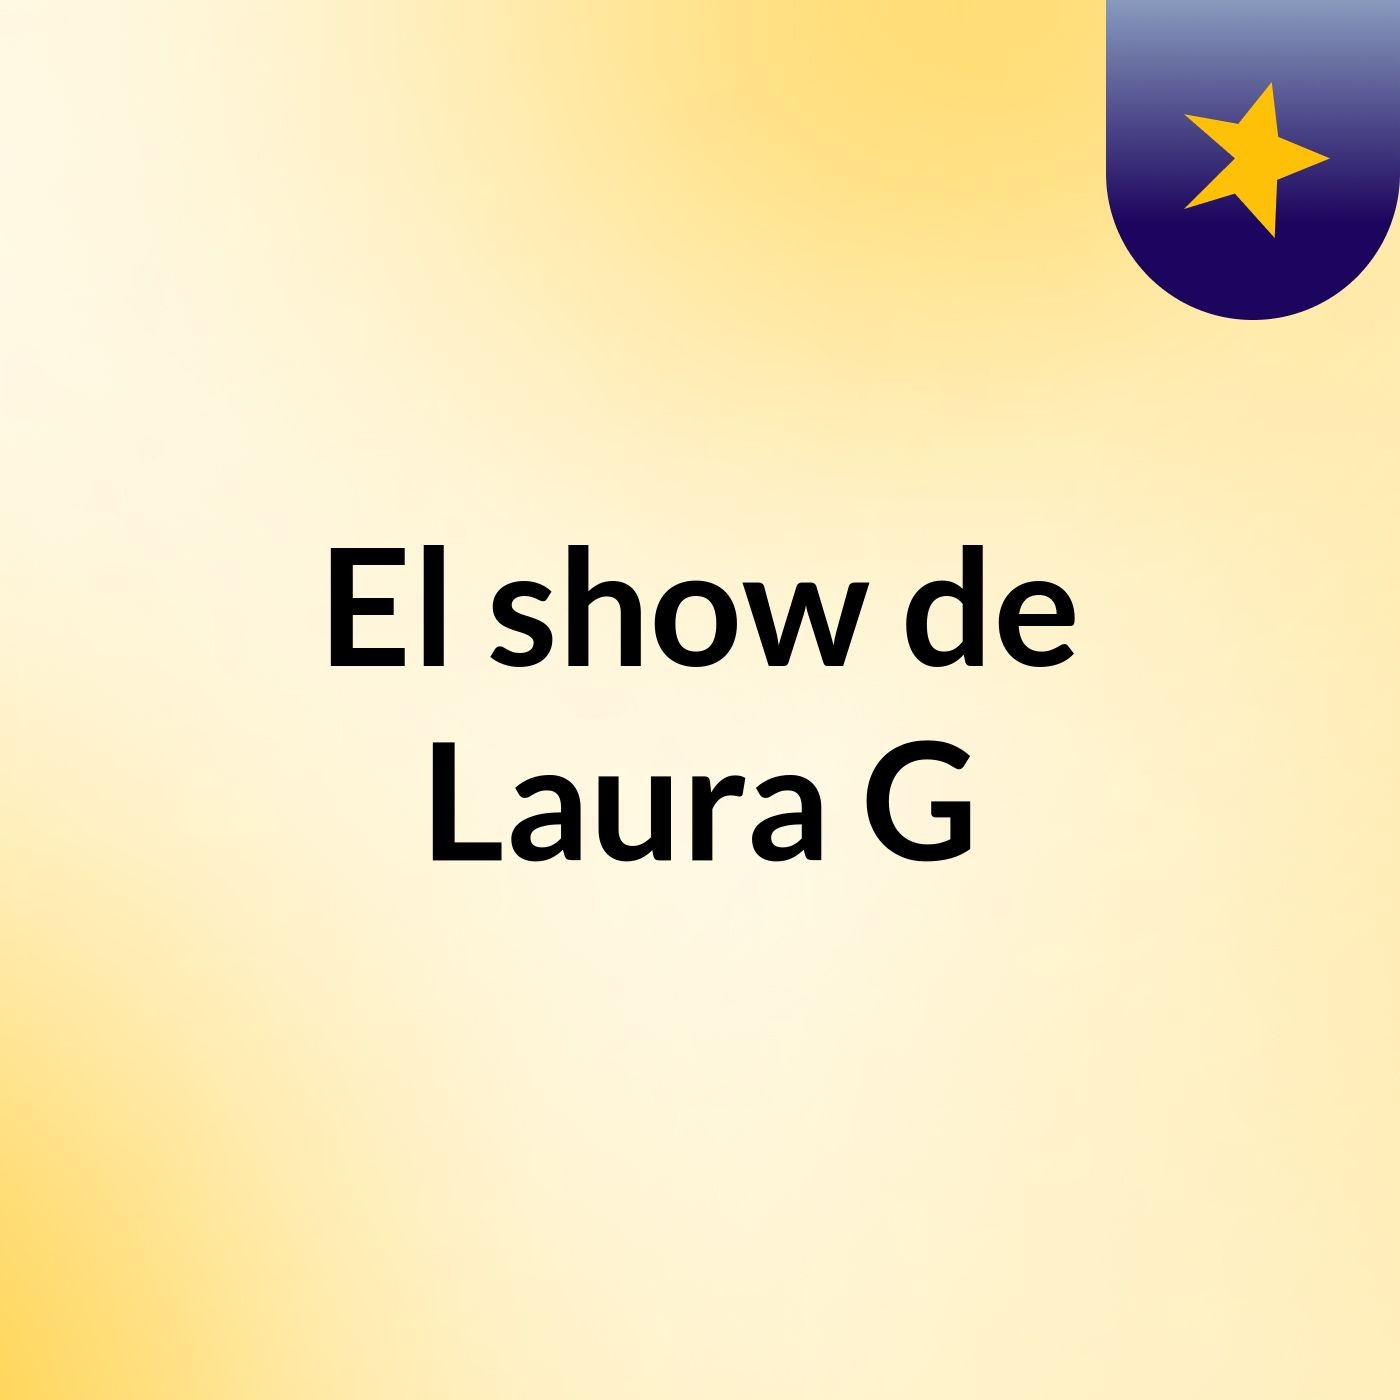 Episodio 3 - El show de Laura G